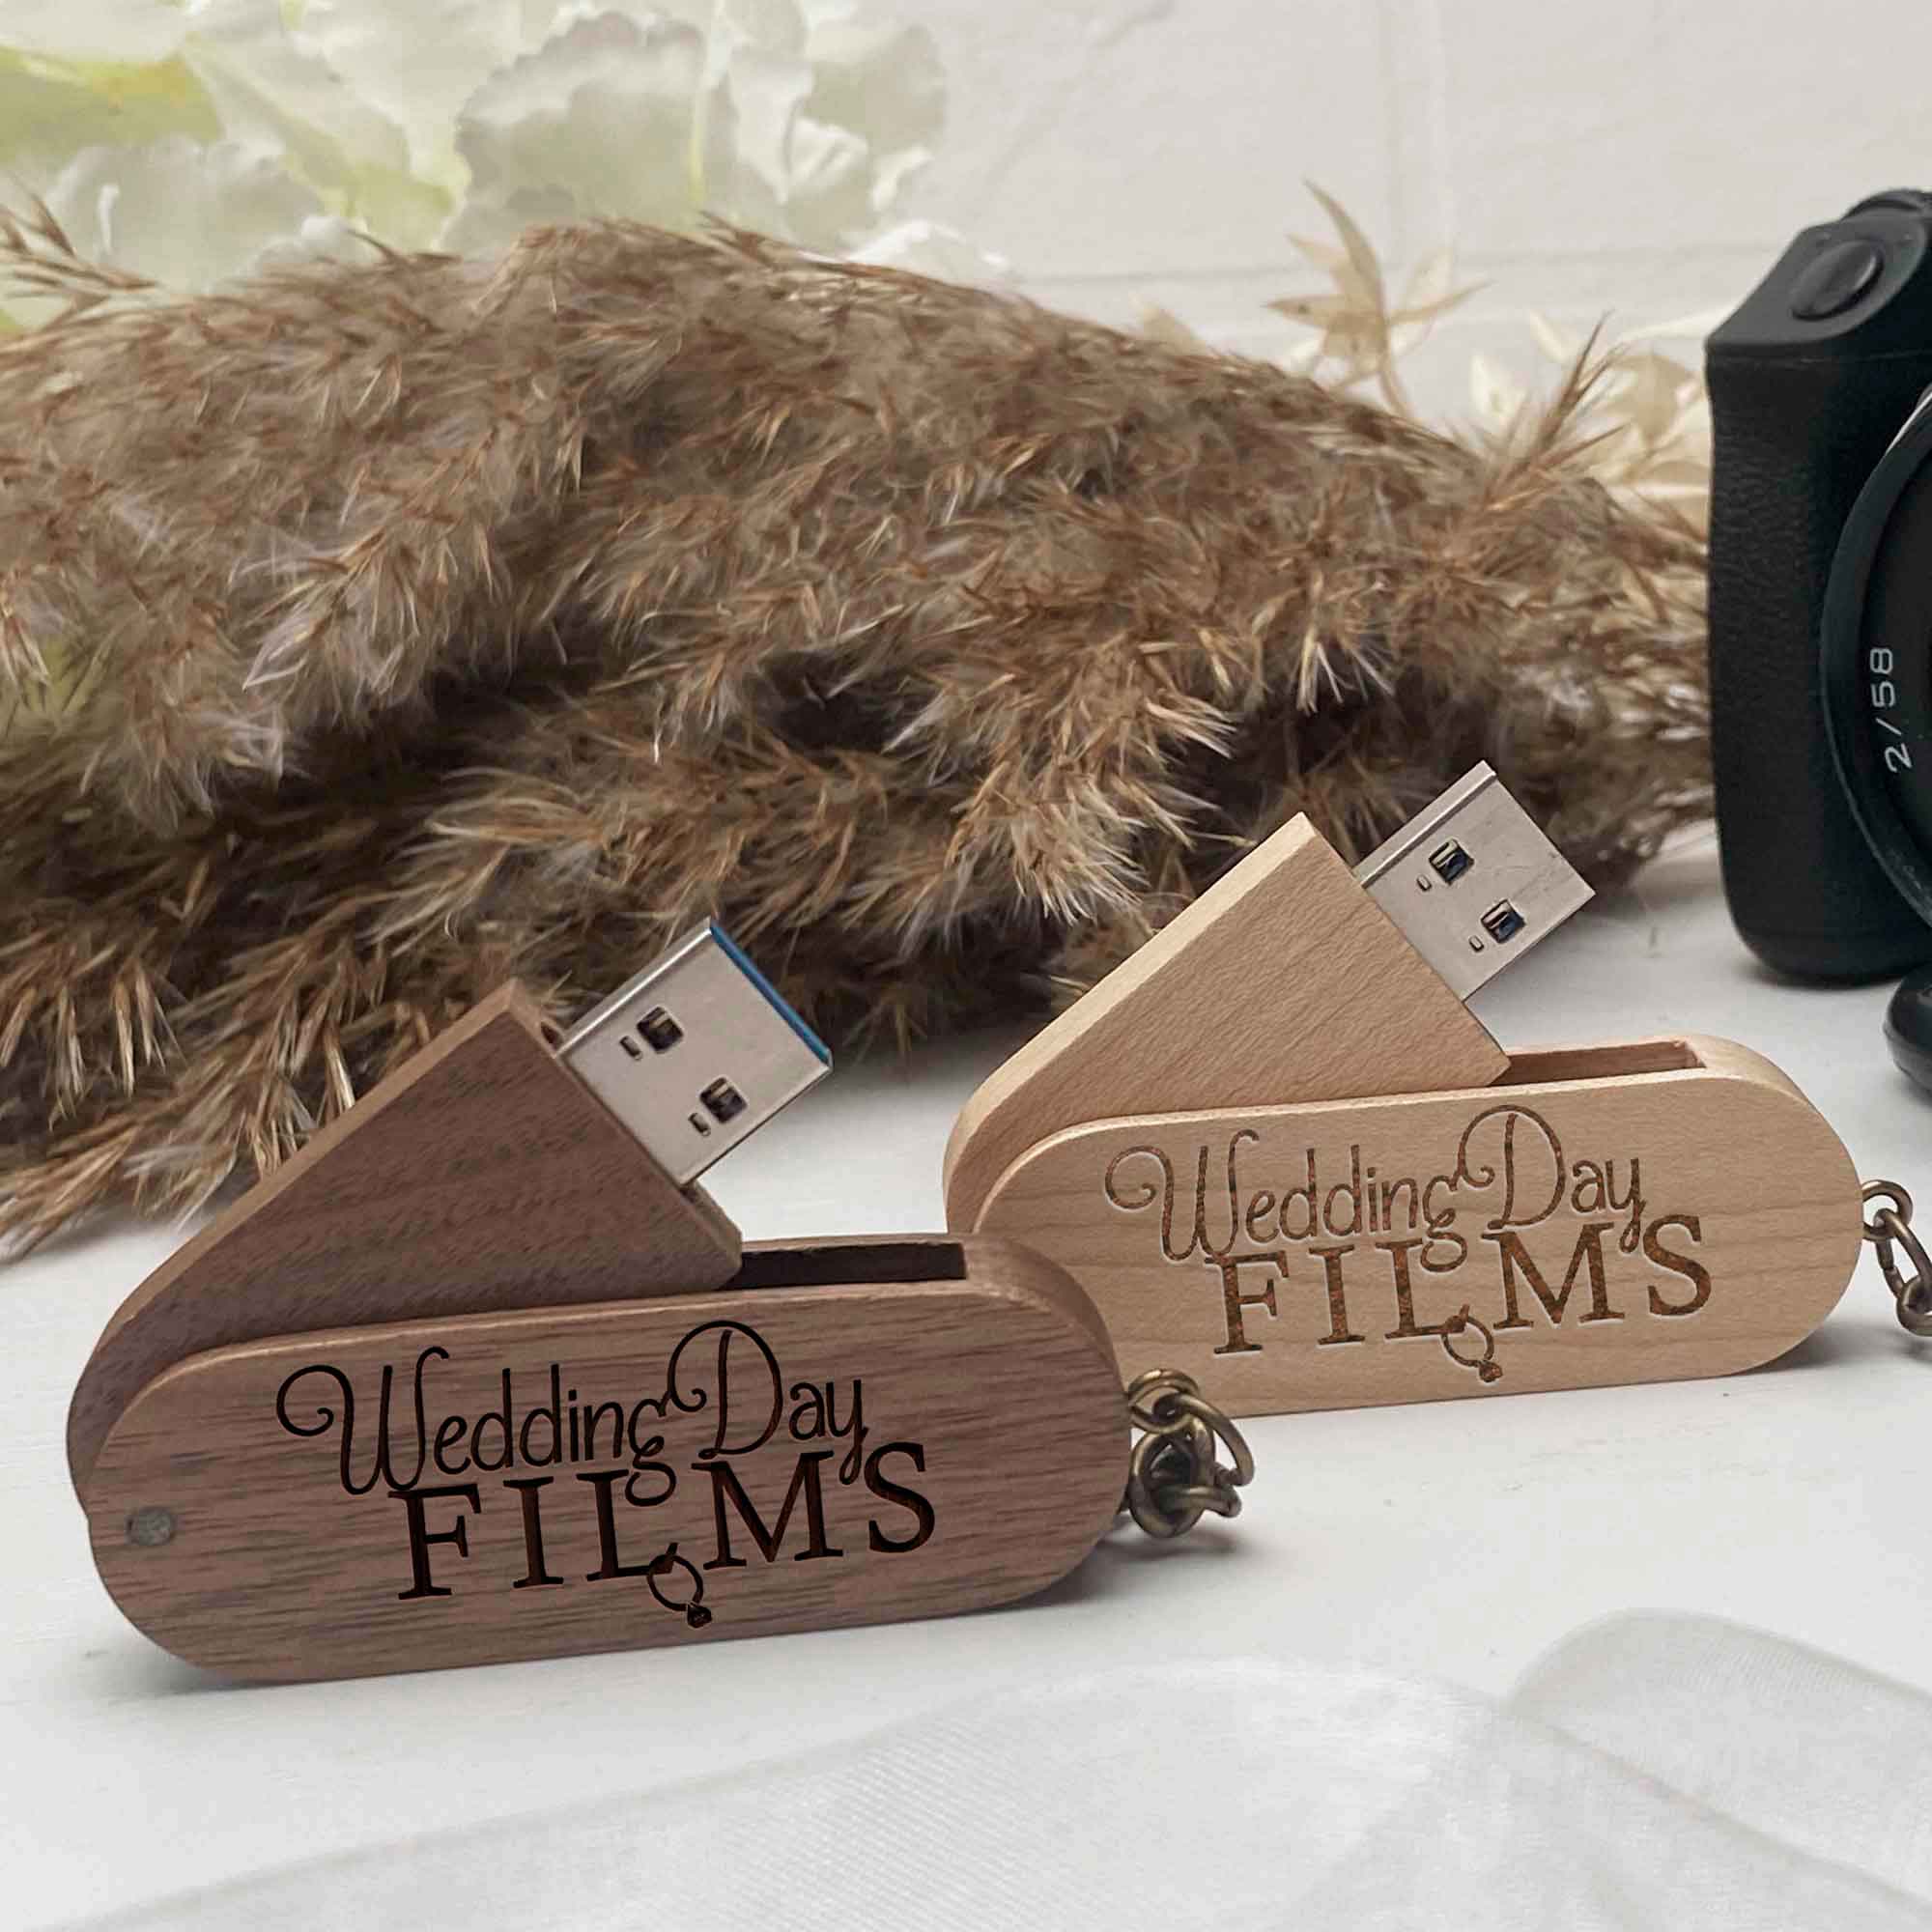 Wood USB flash drive key ring Personal engraving Wedding Films